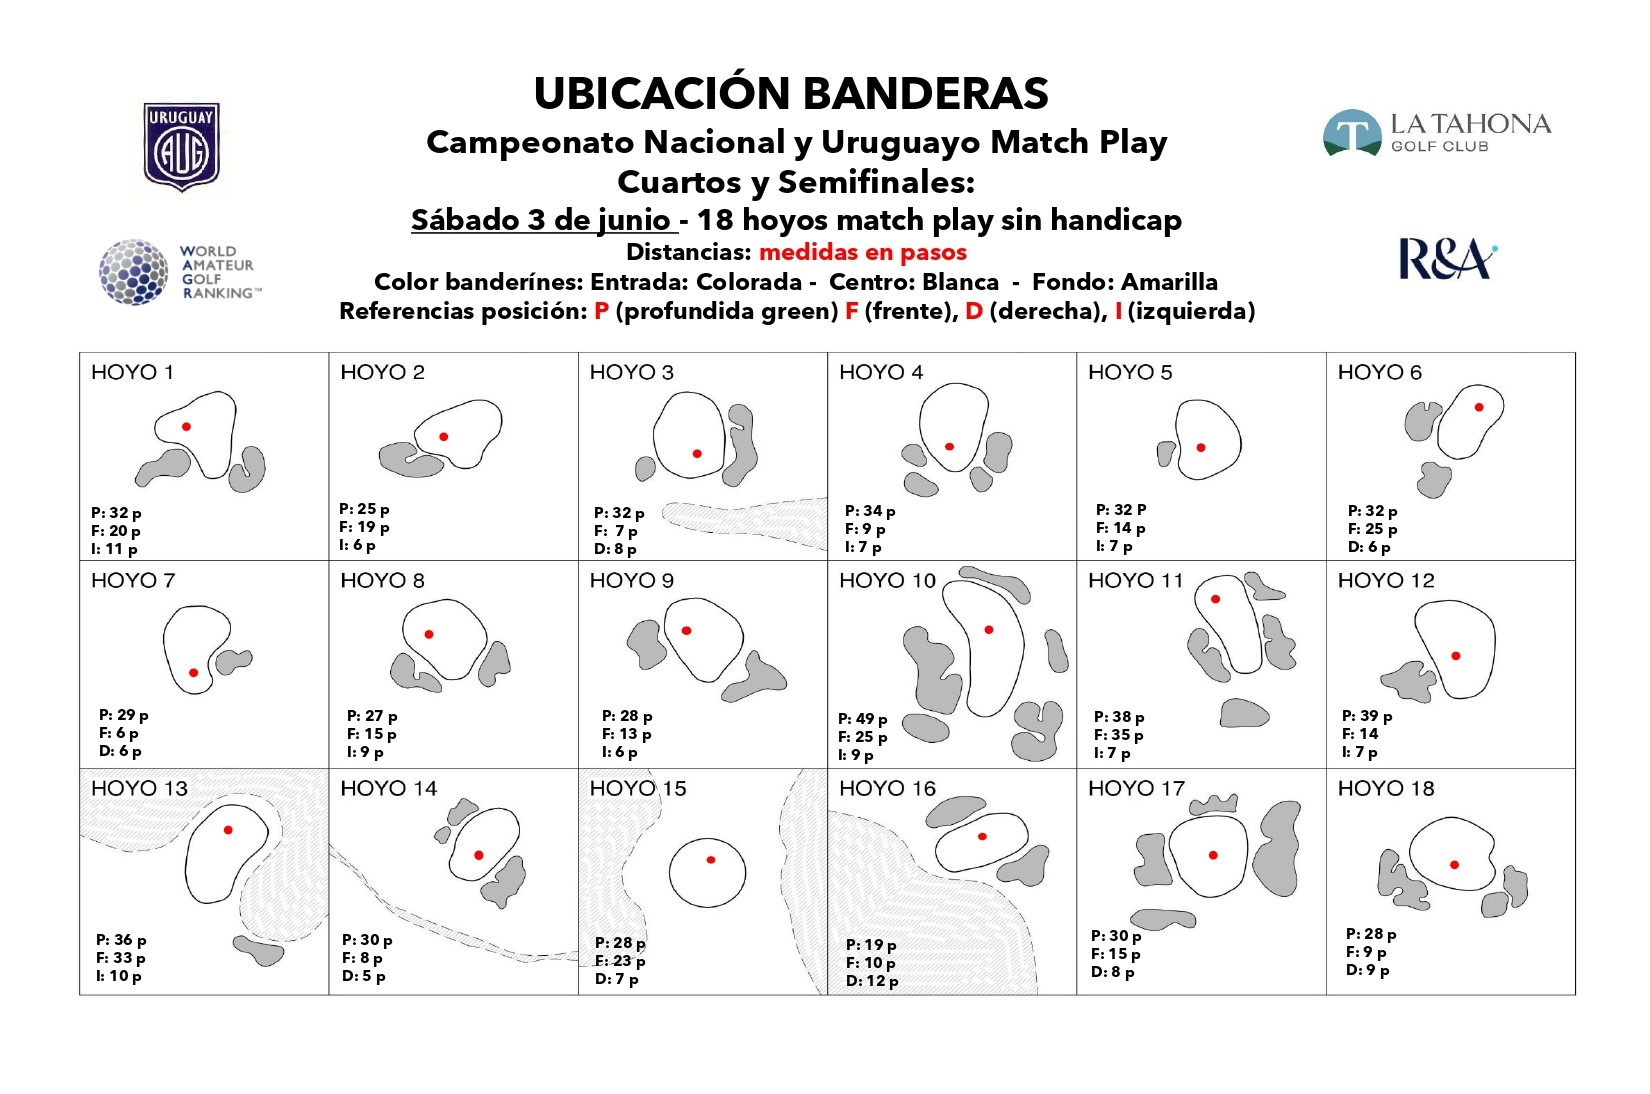 Campeonato Nacional y Uruguayo Match Play - Cuartos y Semis - Posicin de Banderas - Sbado 3/6